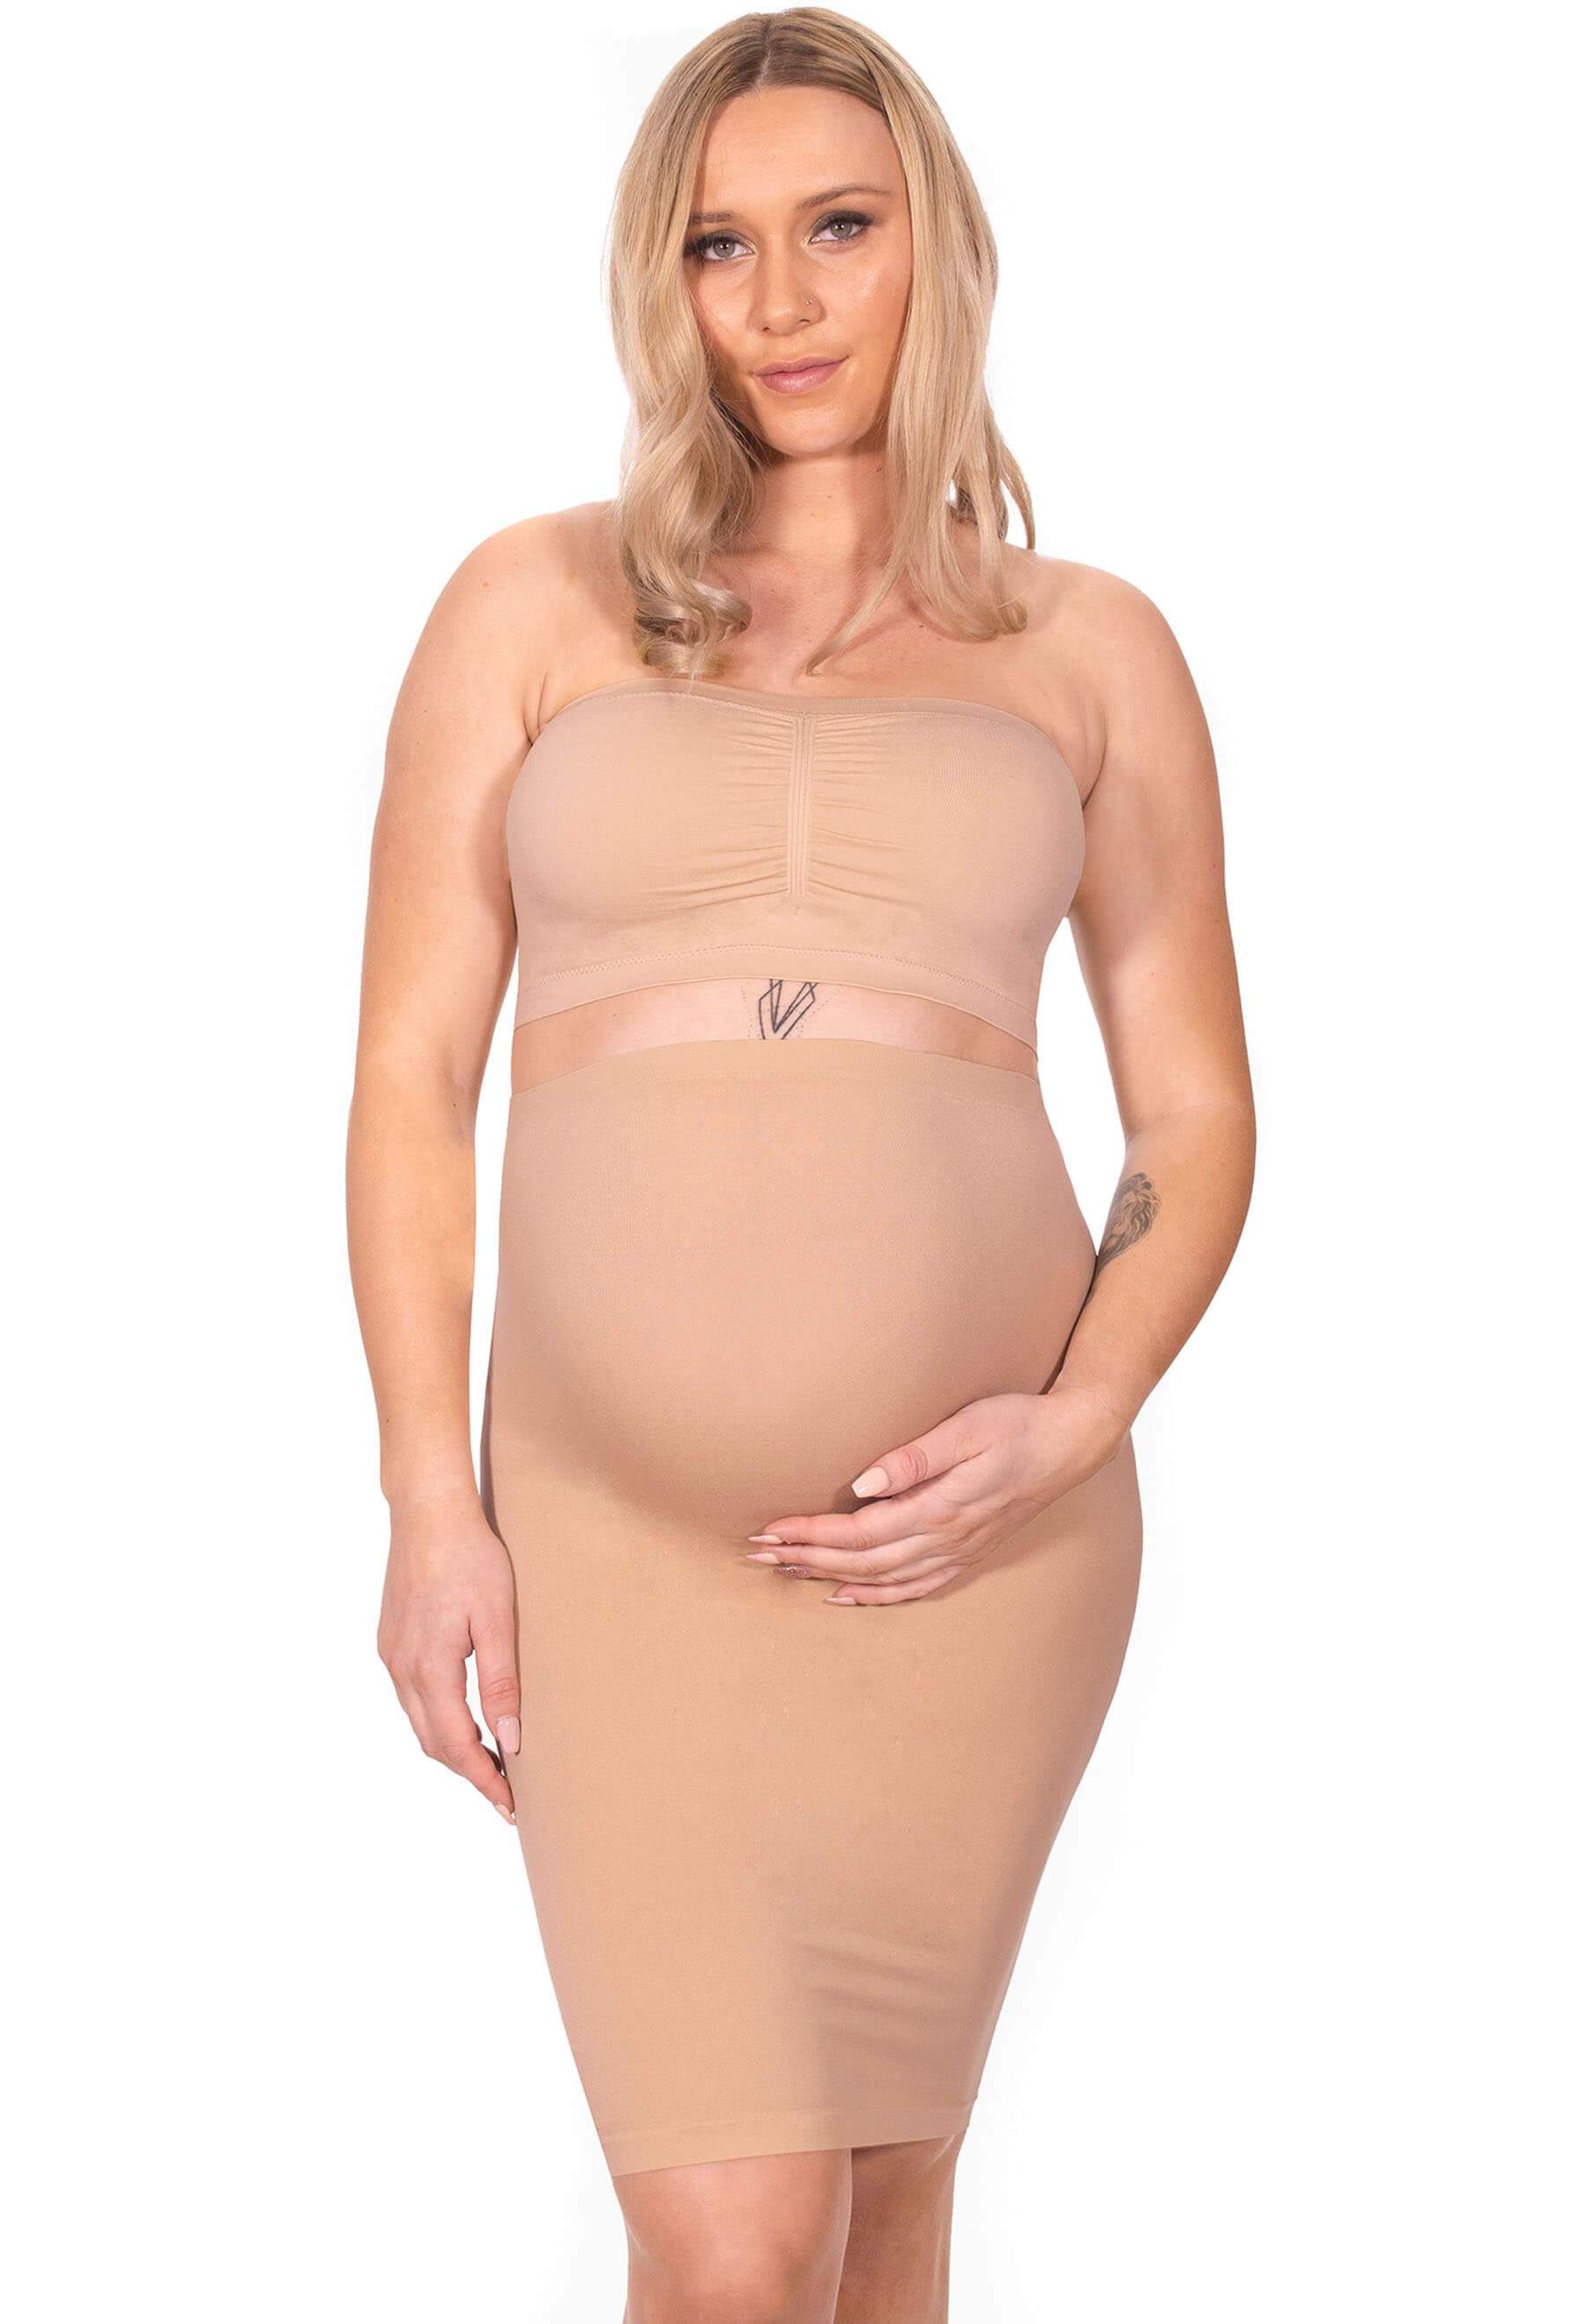 VerPetridure Strapless Bras for Women Pregnant Women's Plain Color